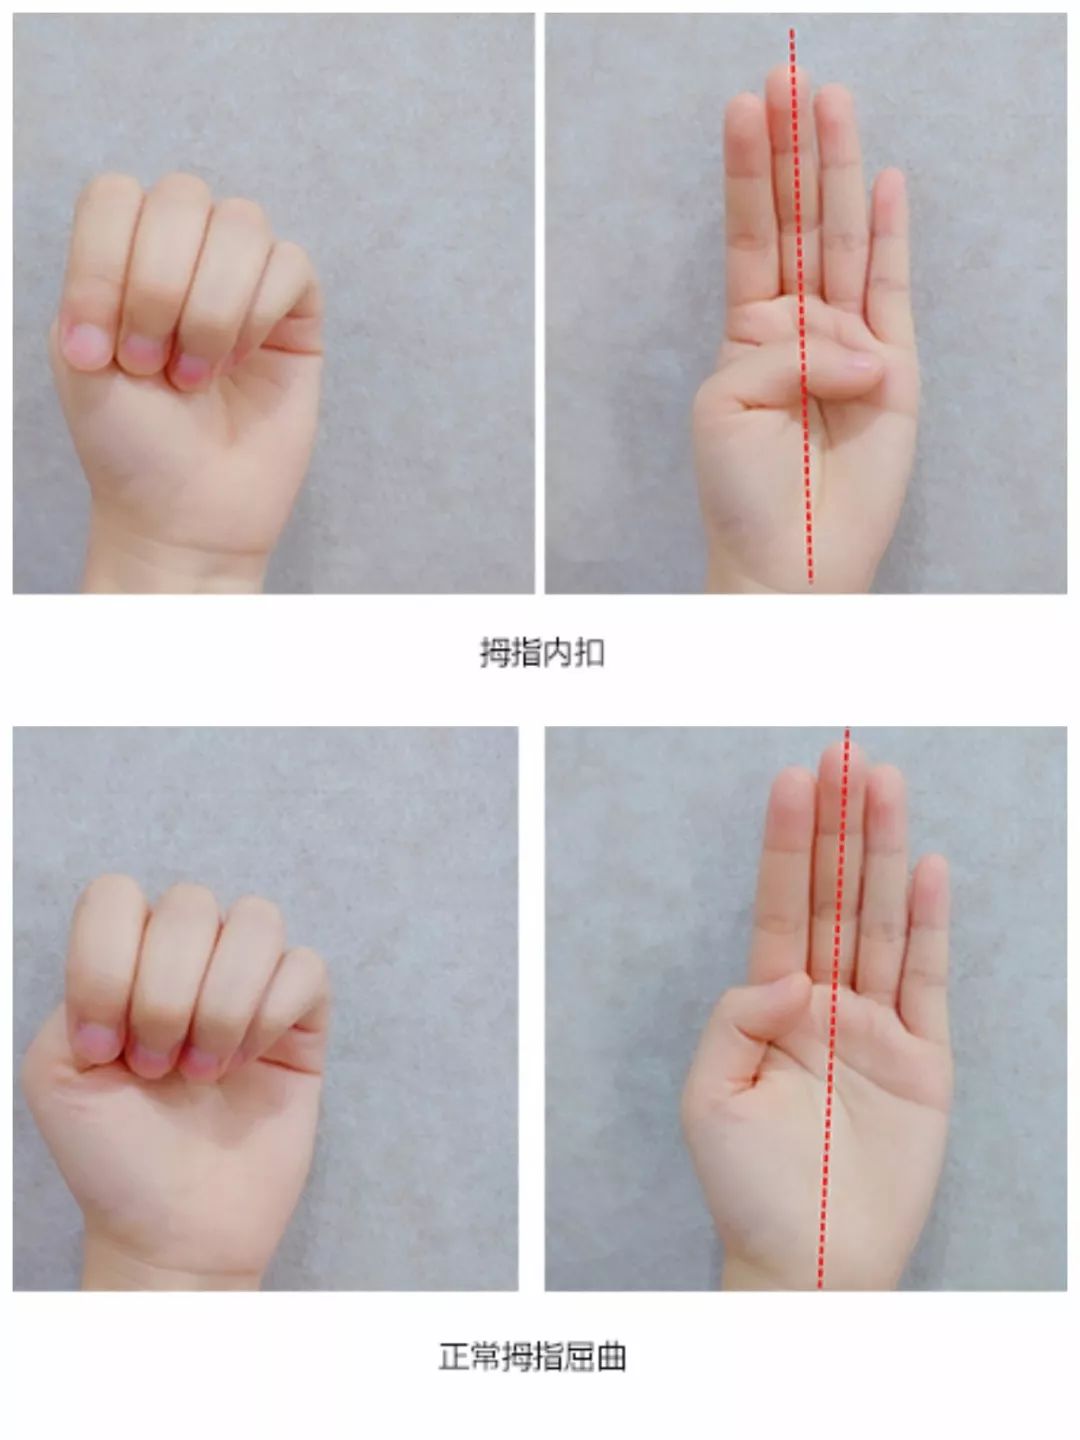 宝宝手掌张开时,拇指位置超过手掌中线,并紧贴向手掌,也叫皮层拇指征